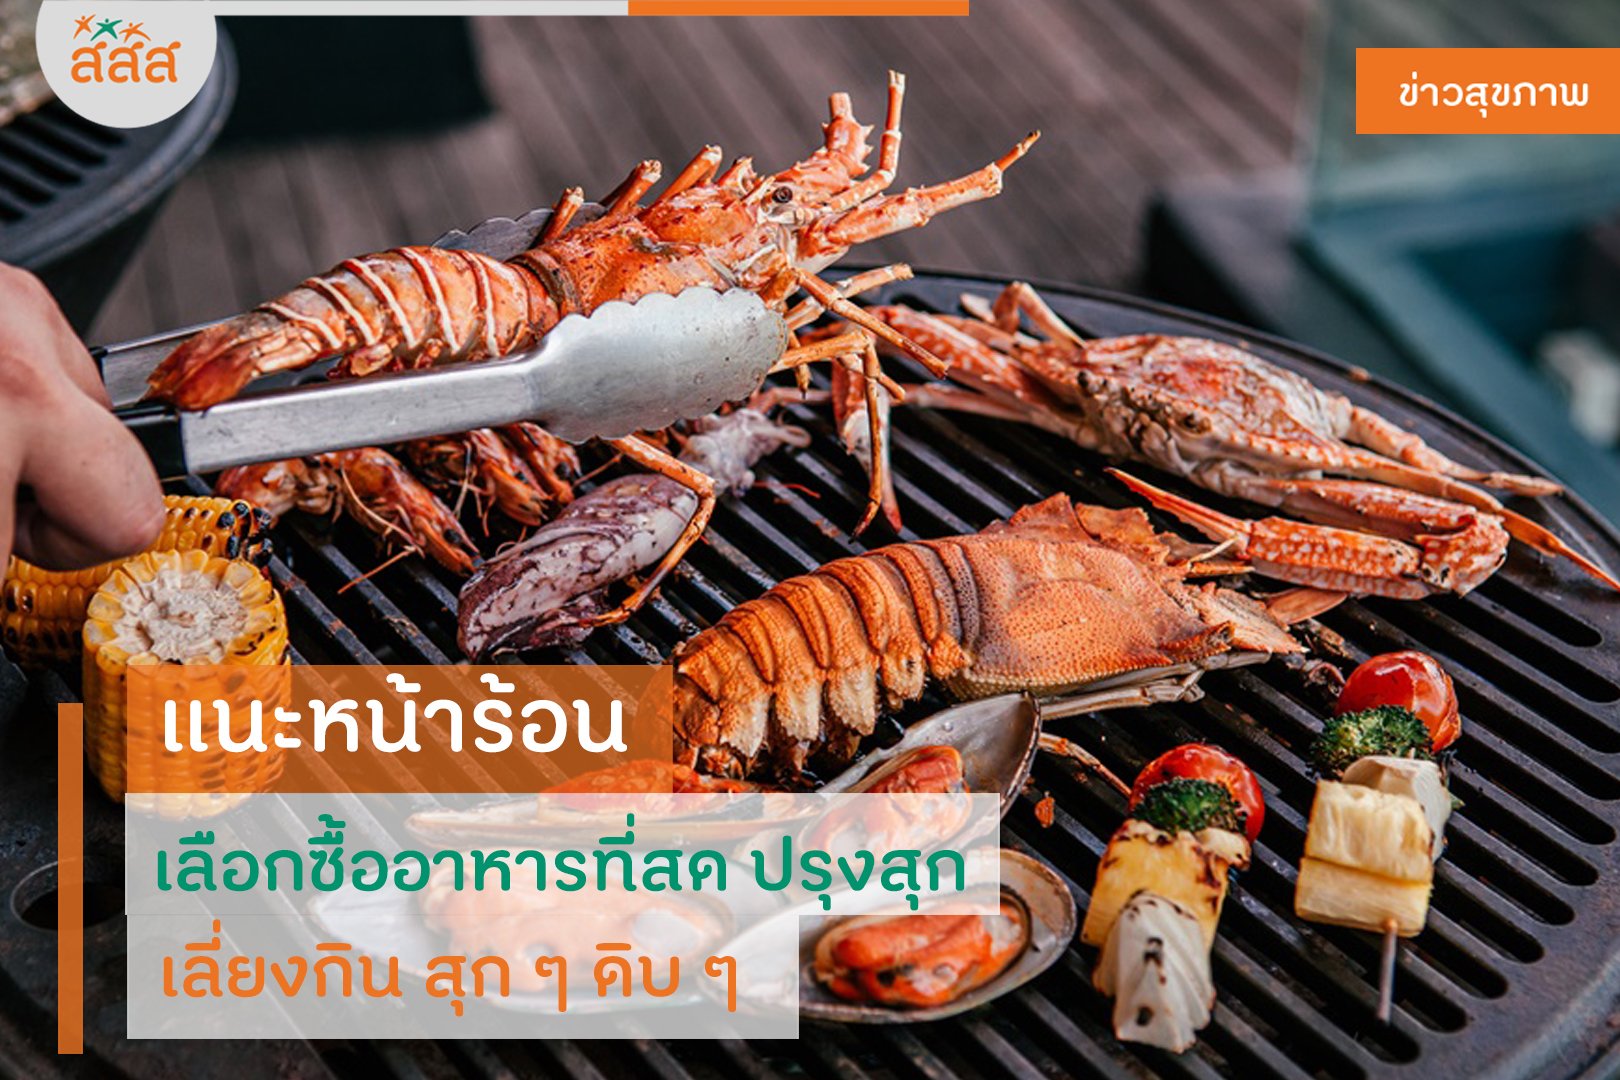 แนะหน้าร้อน เลือกซื้ออาหารทะเลที่สด ปรุงสุก เลี่ยงกิน สุก ๆ ดิบ ๆ thaihealth